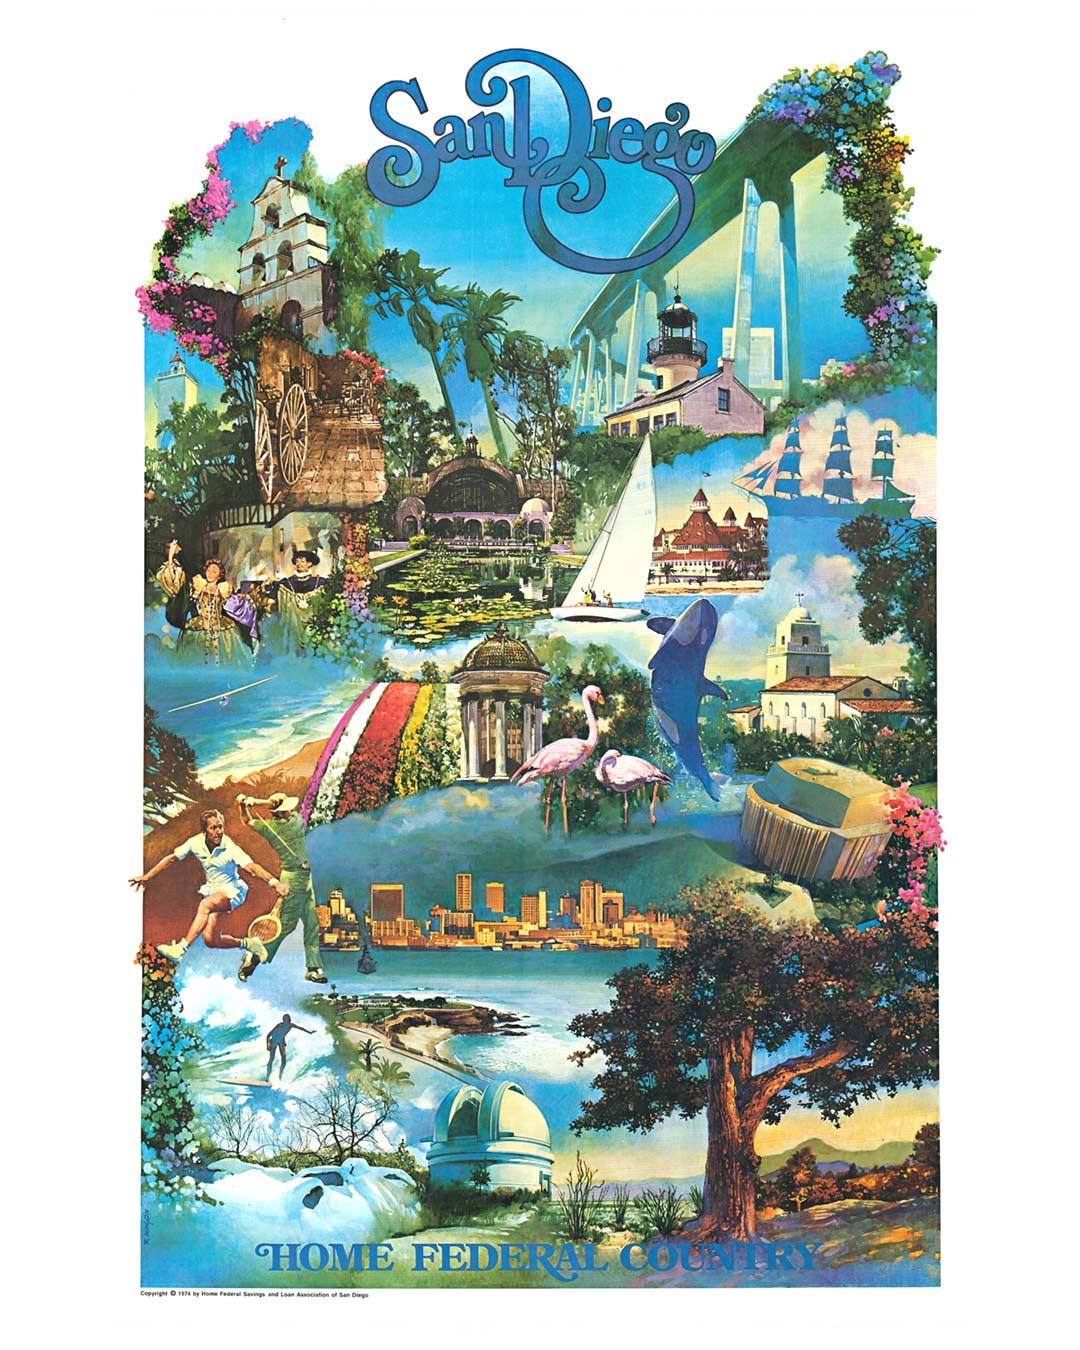 San Diego (Home Federal) Vintage-Plakat von 1974 – Print von Robert Kinyon